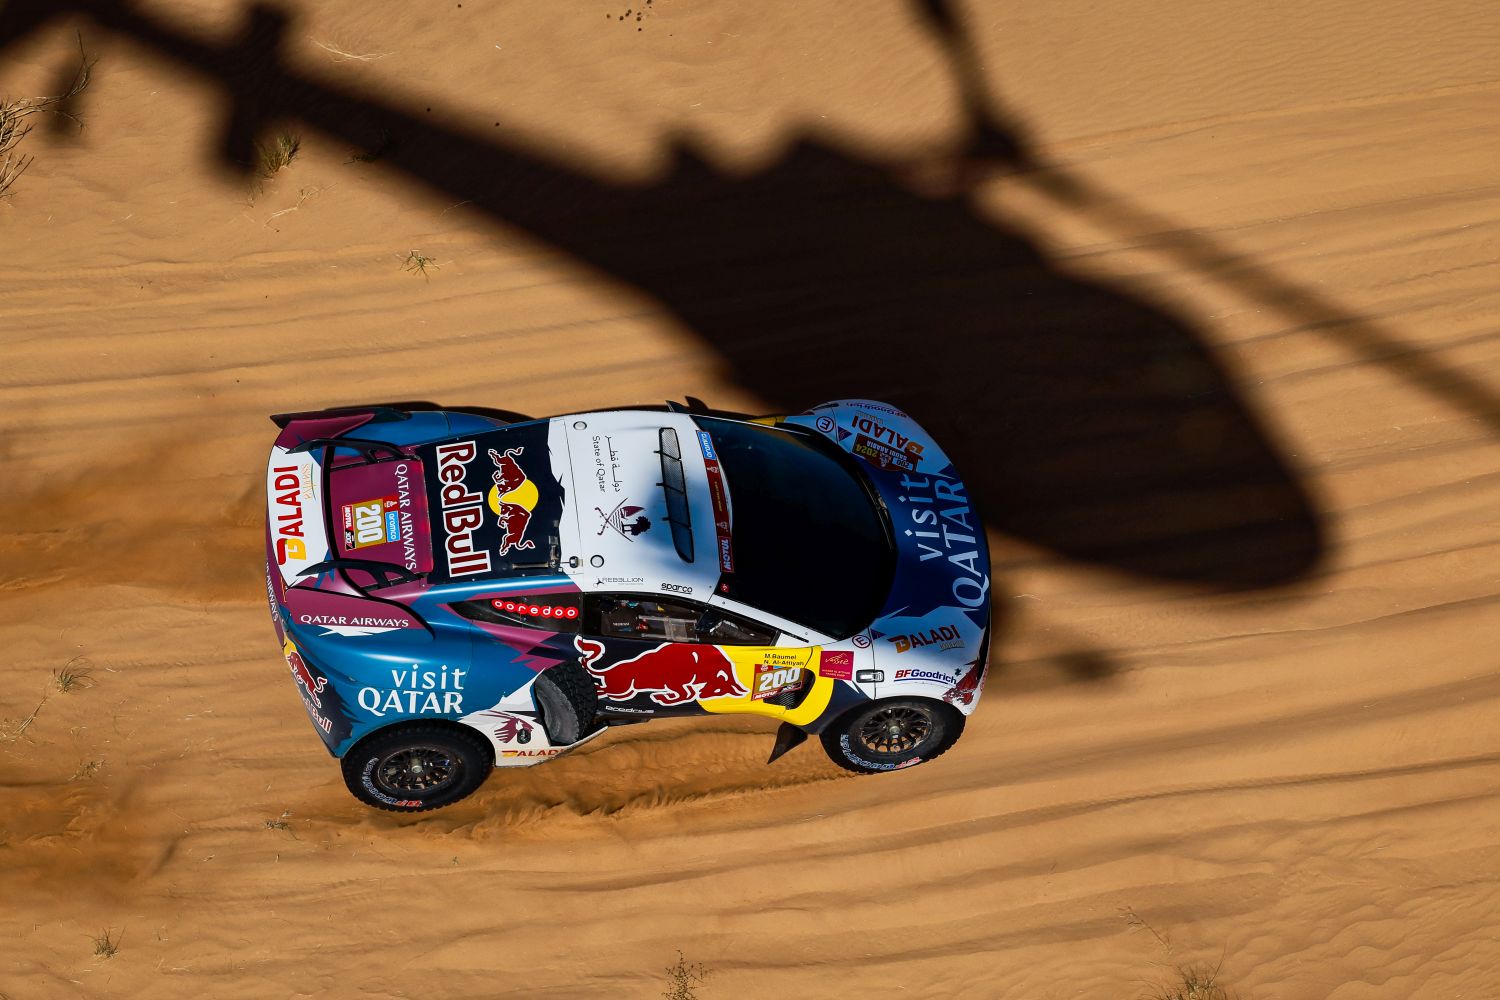 Al-Attiyah vence quinta especial do Dakar. Al Rajhi segue na liderança nos carros